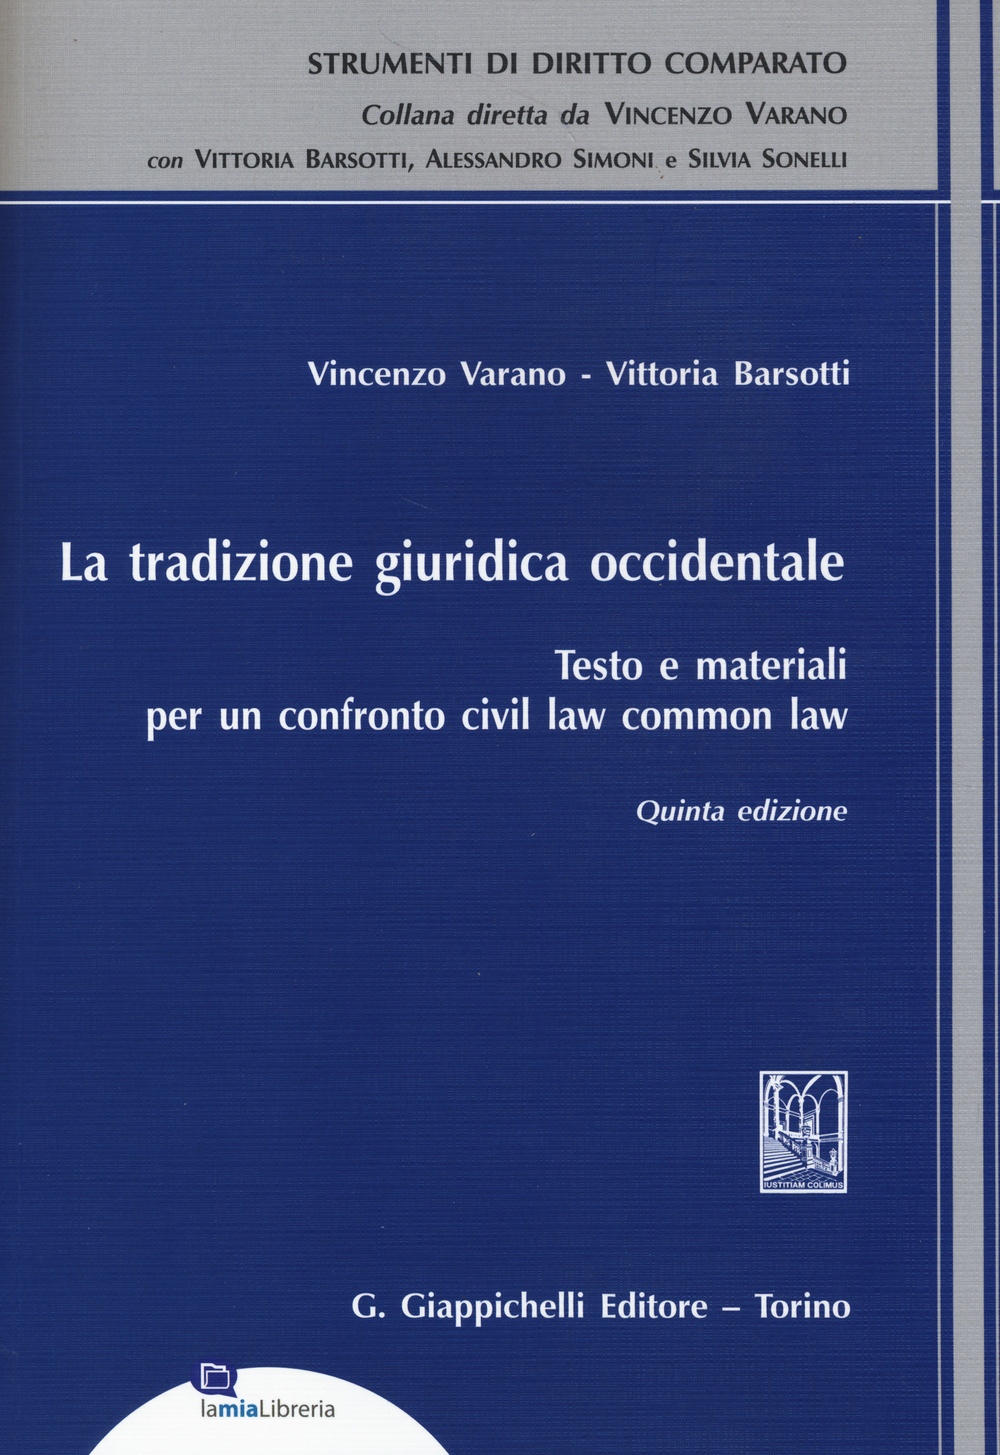 La tradizione giuridica occidentale. Testo e materiali per un confronto civil law common law